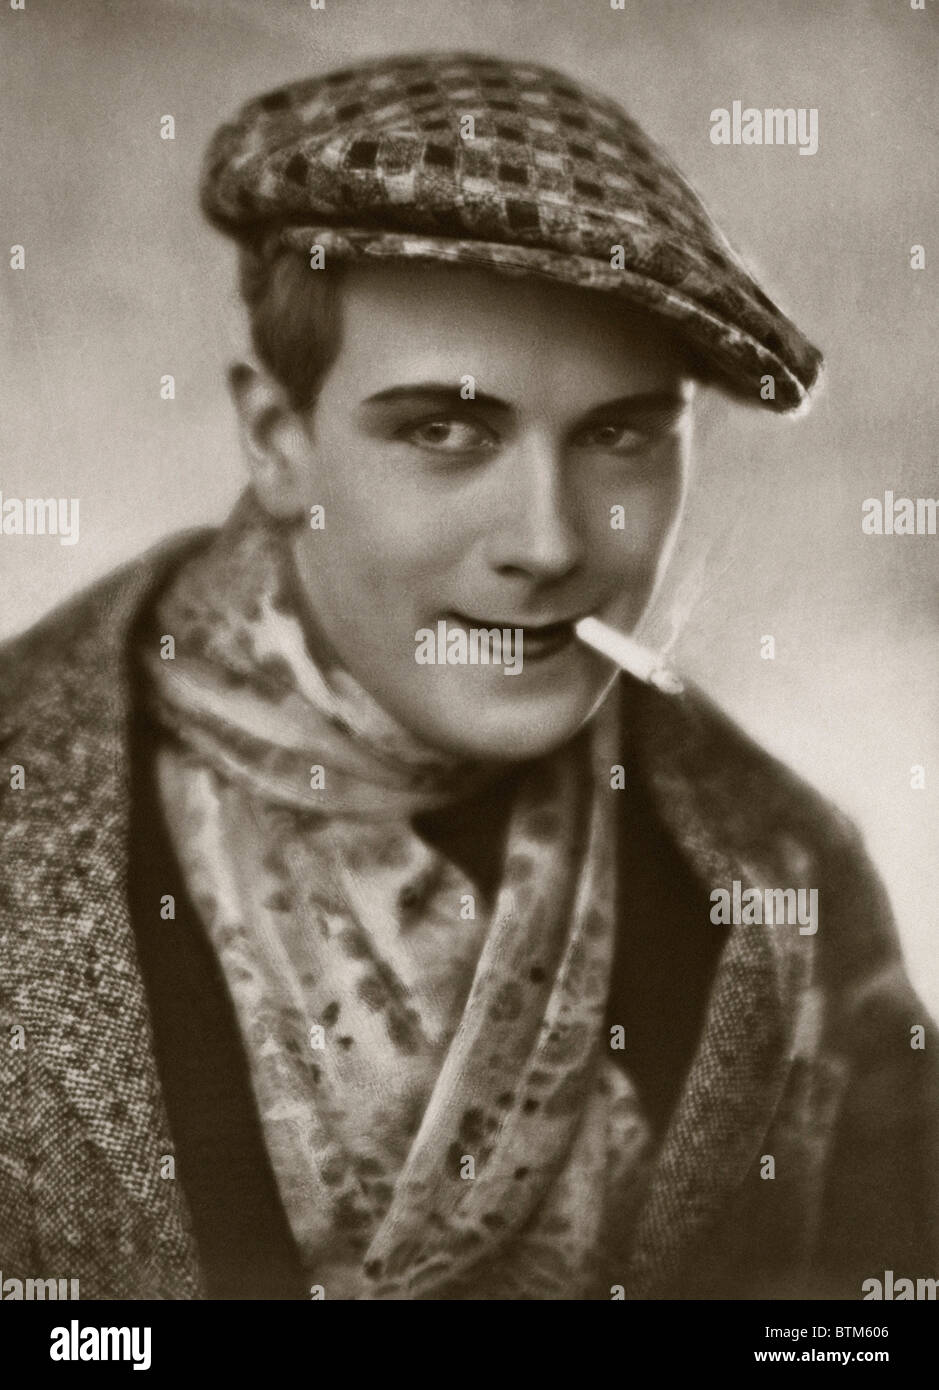 Historisches Foto (1910) von einem Mann eine Zigarette rauchend Stockfoto